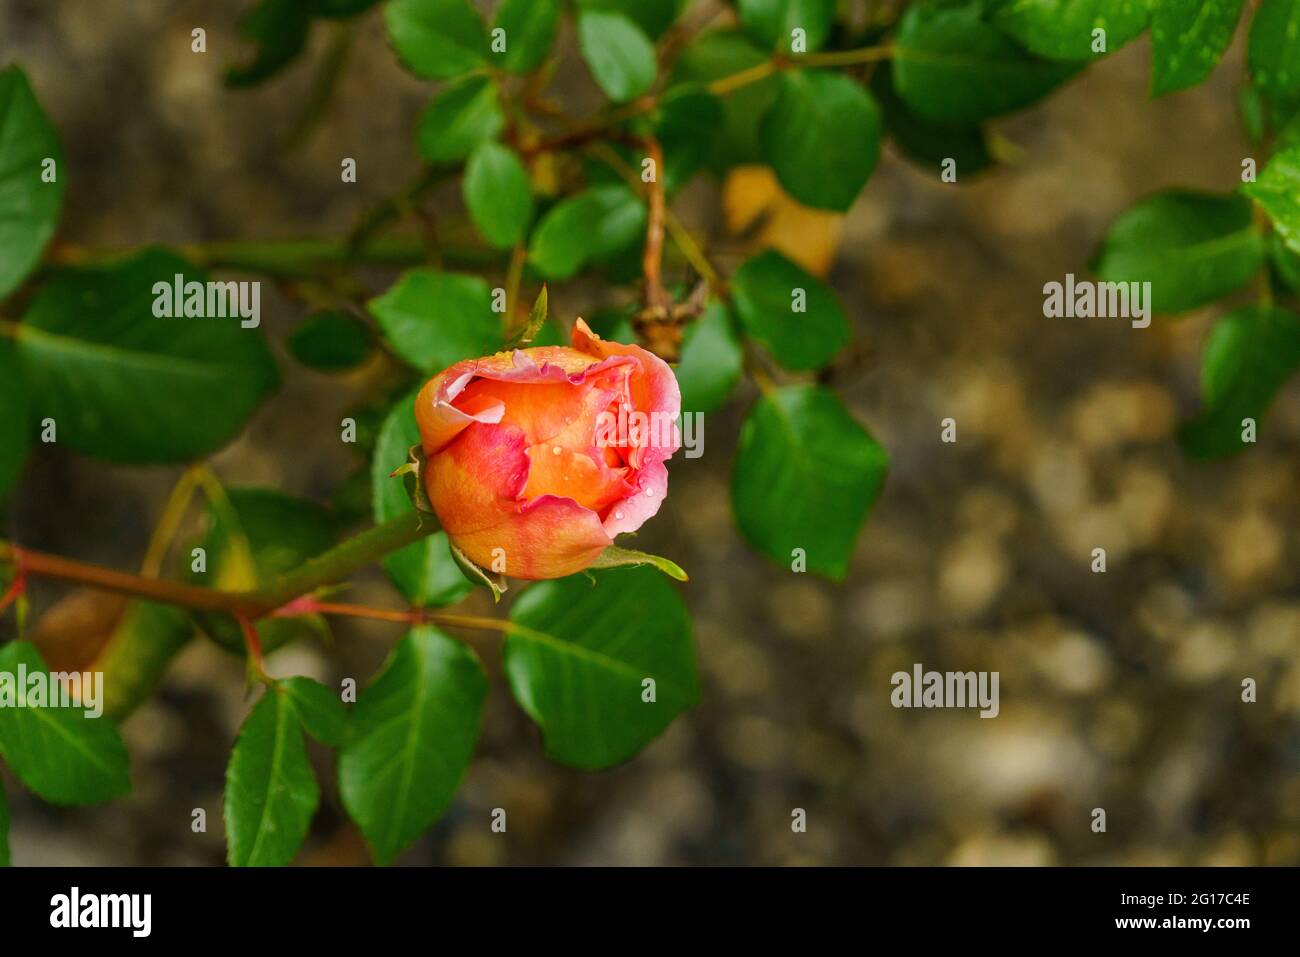 Rote Rose am Rosenstock vor einer Hauswand, naranja, rosa, gelb mehrfarbig im grünen Blättermeer. Morgentau auf Rosenknospe. Símbolo für Liebe und Treue Foto de stock